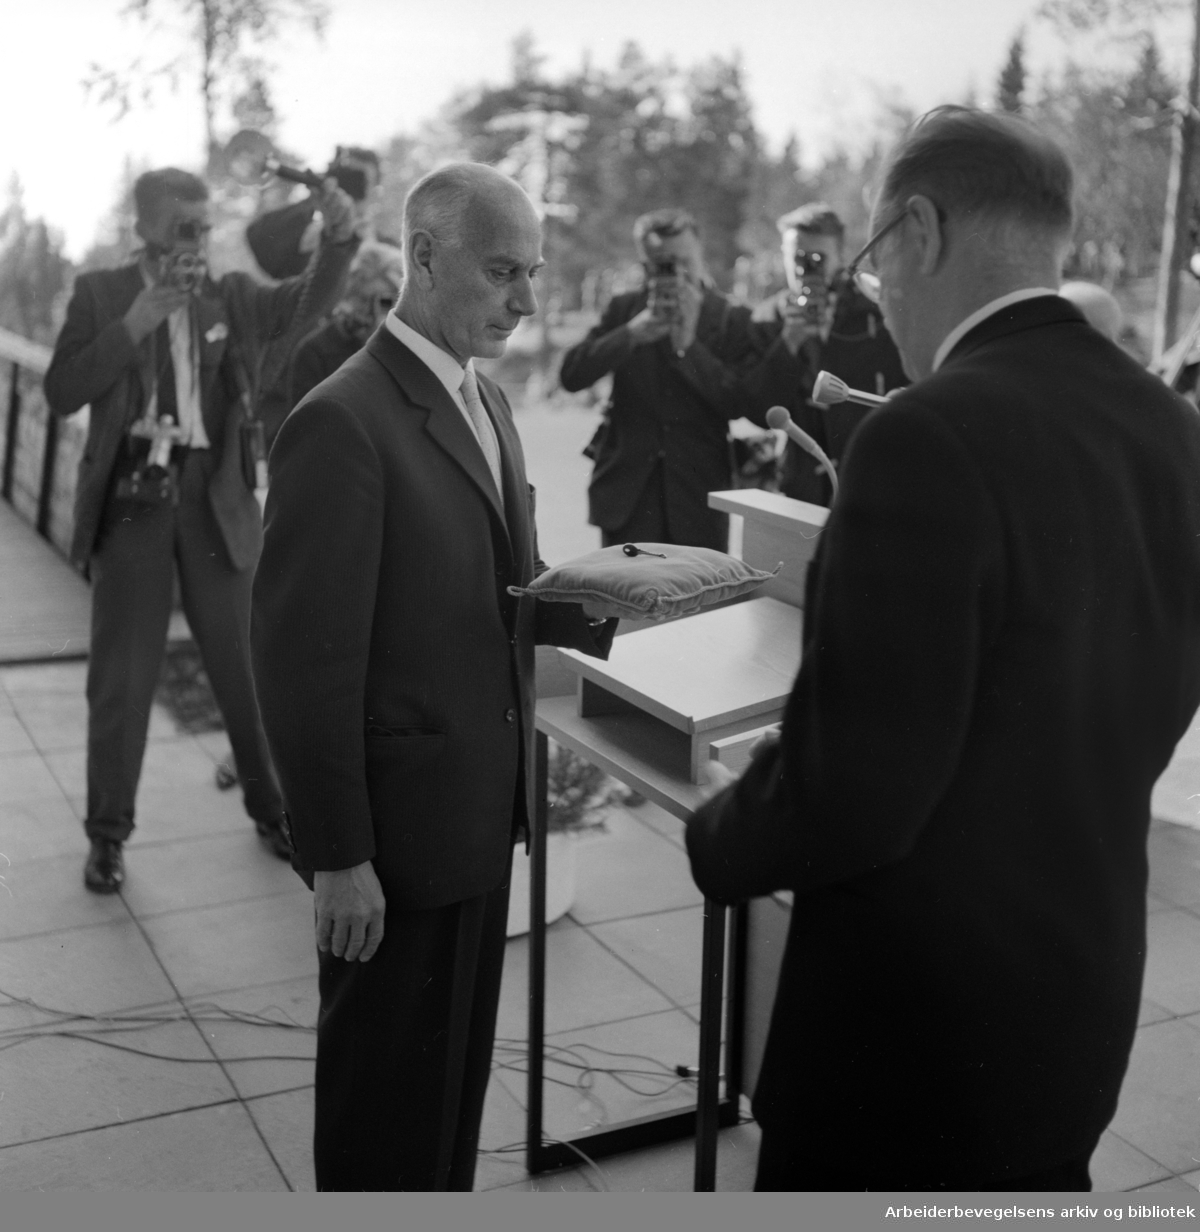 Voksenåsen. Fra overleveringen. Nøklene til "Voksenåsen", den norske nasjonalgaven til Sverige, ble overrakt av statsminister Einar Gerhardsen til den svenske statsminister Tage Erlander. Oktober 1960